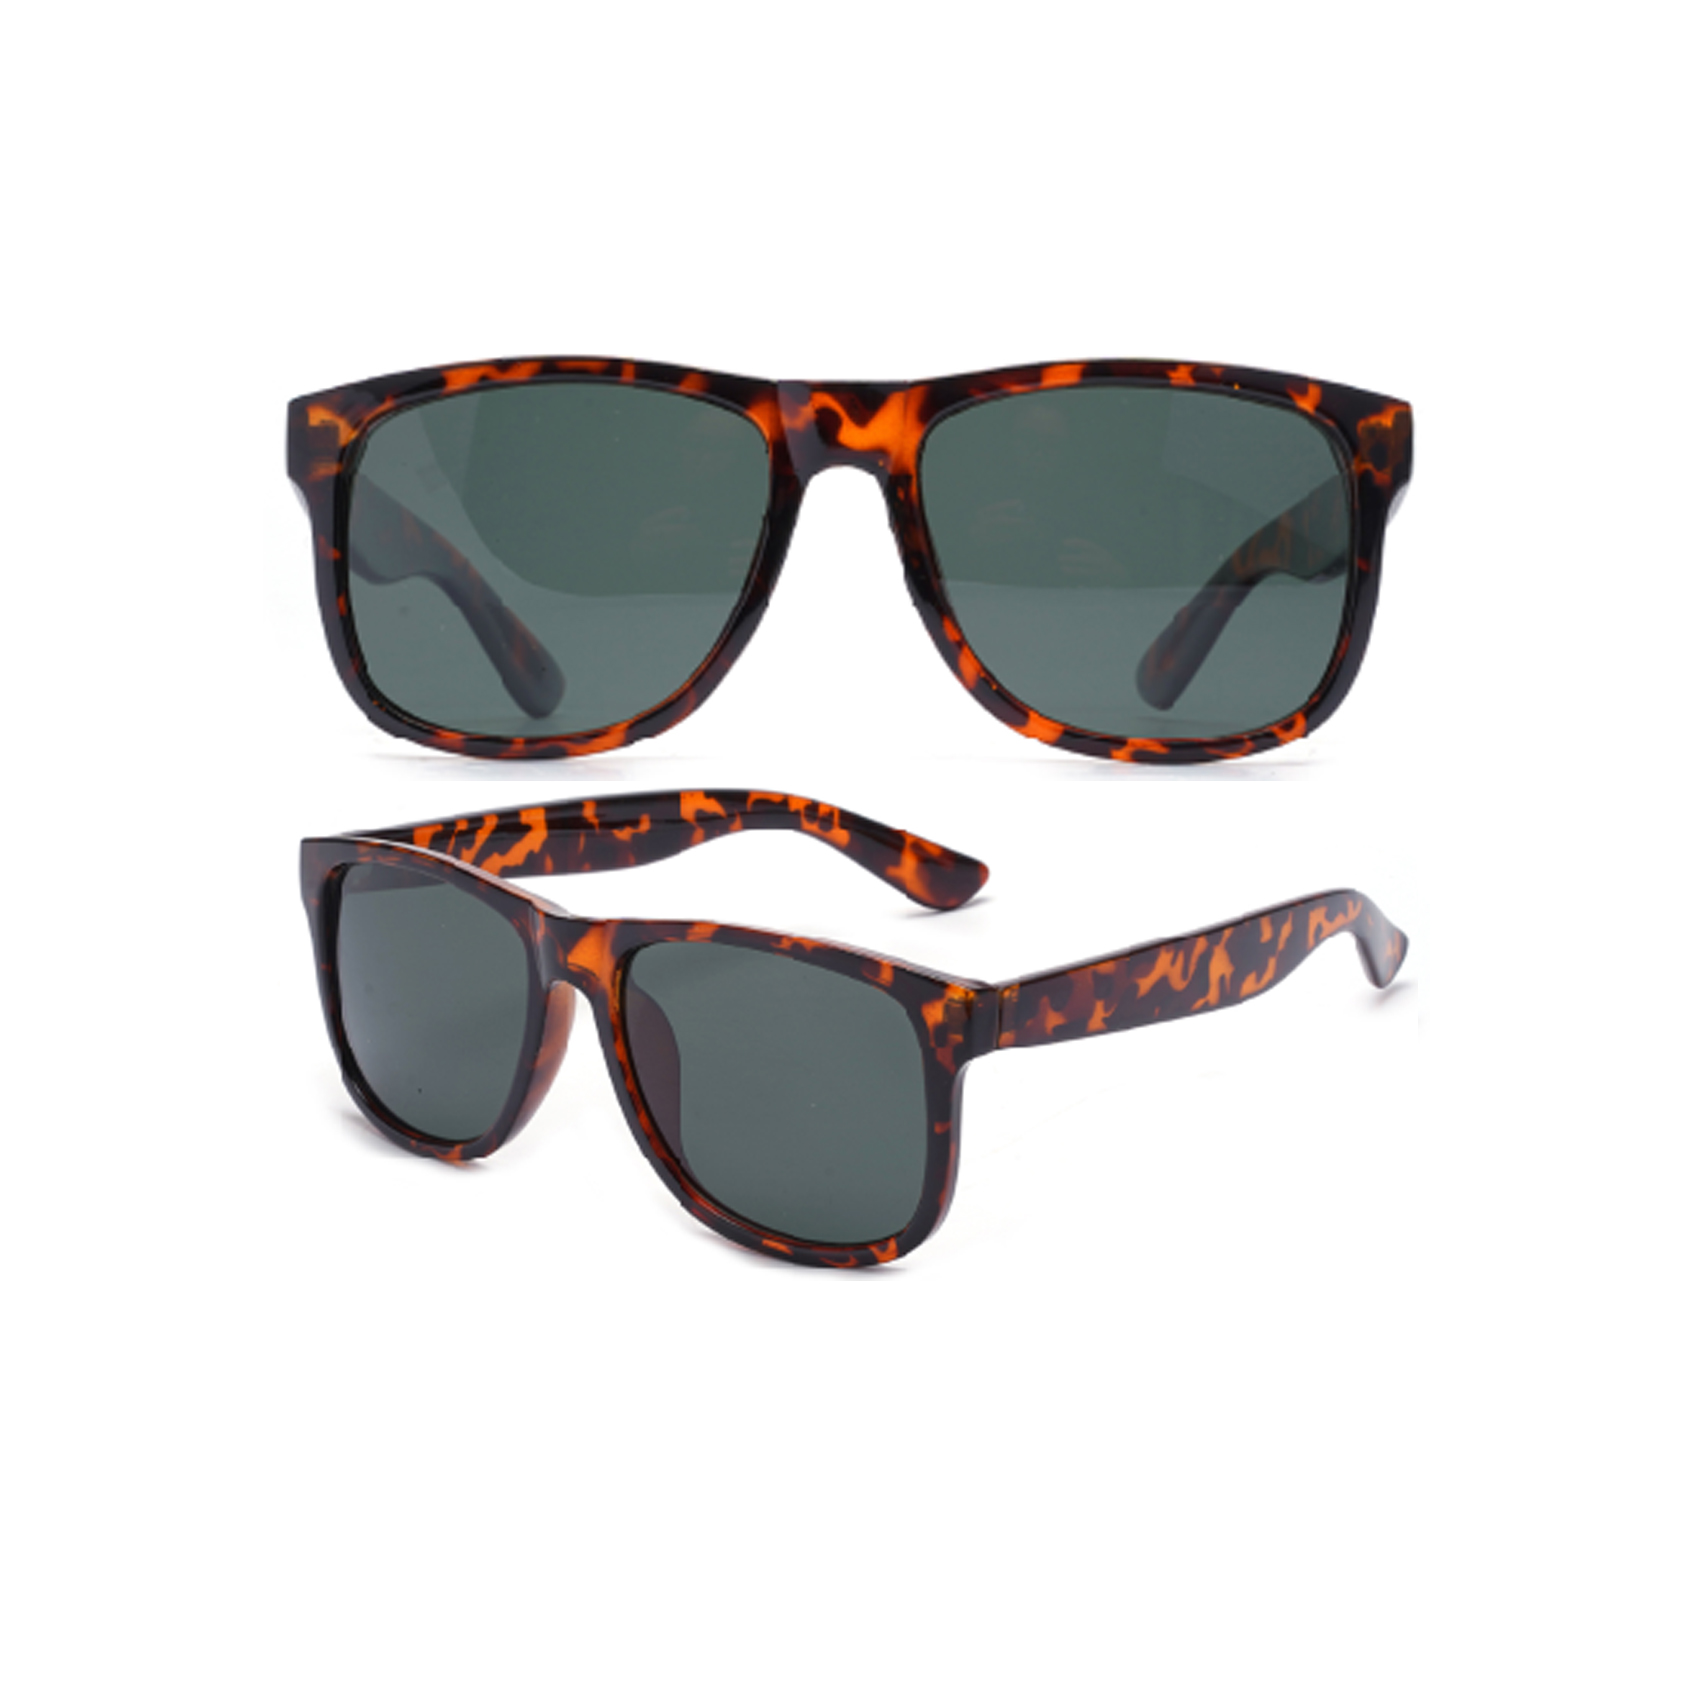 Vintage Classic Squared Leopard Print Sunglasses Wholesale Vintage Sunglasses